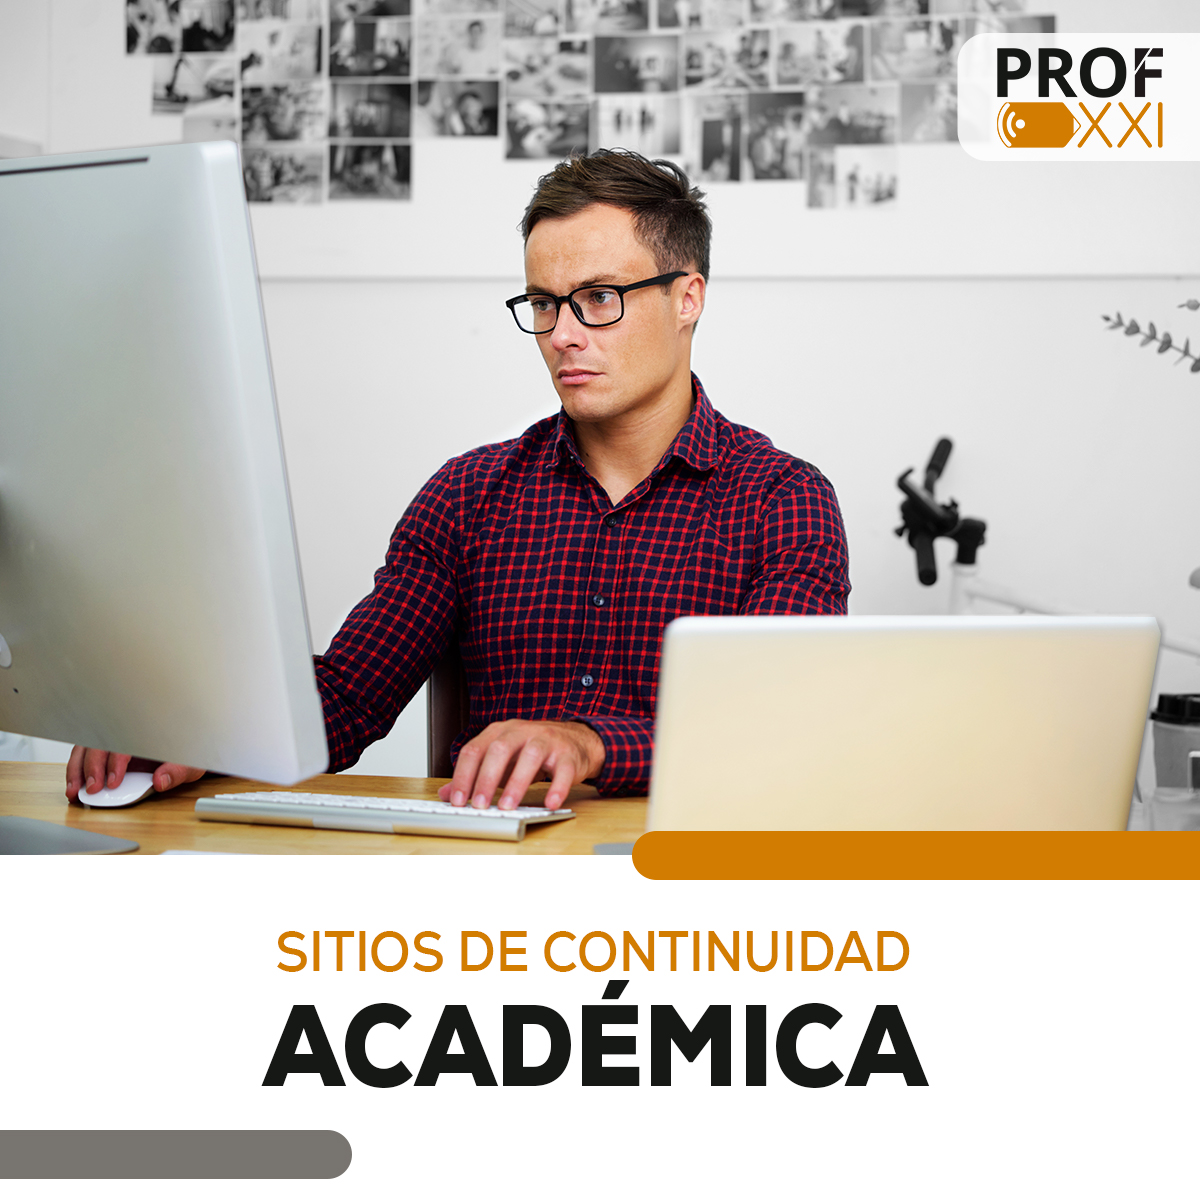 Sitios de continuidad académica en las instituciones de educación superior (IES).